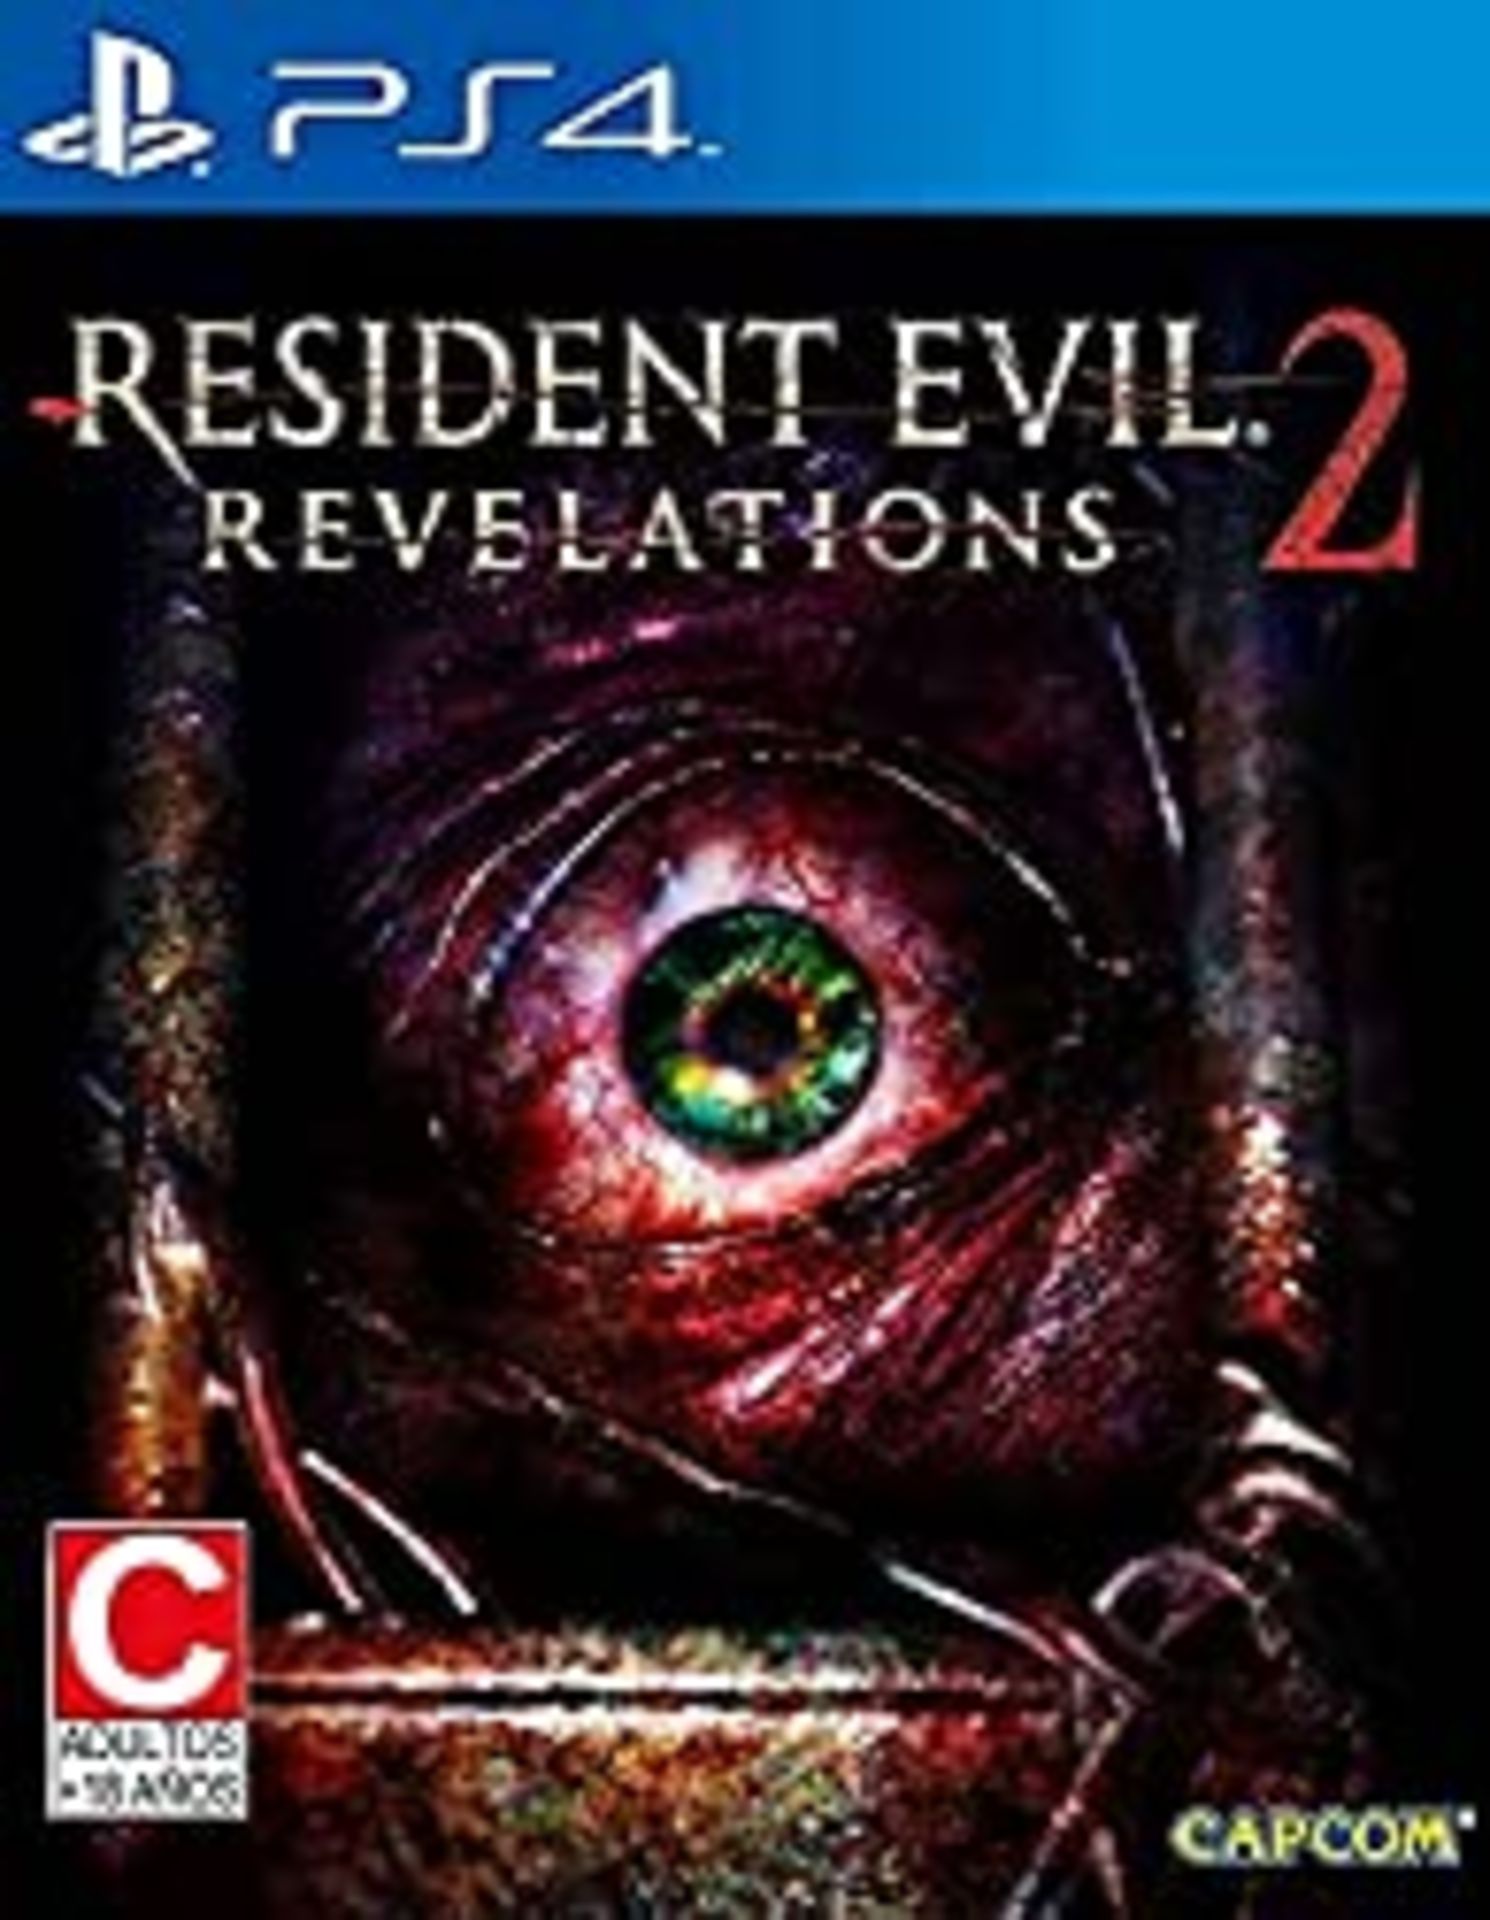 RRP £28.43 Resident Evil: Revelations 2